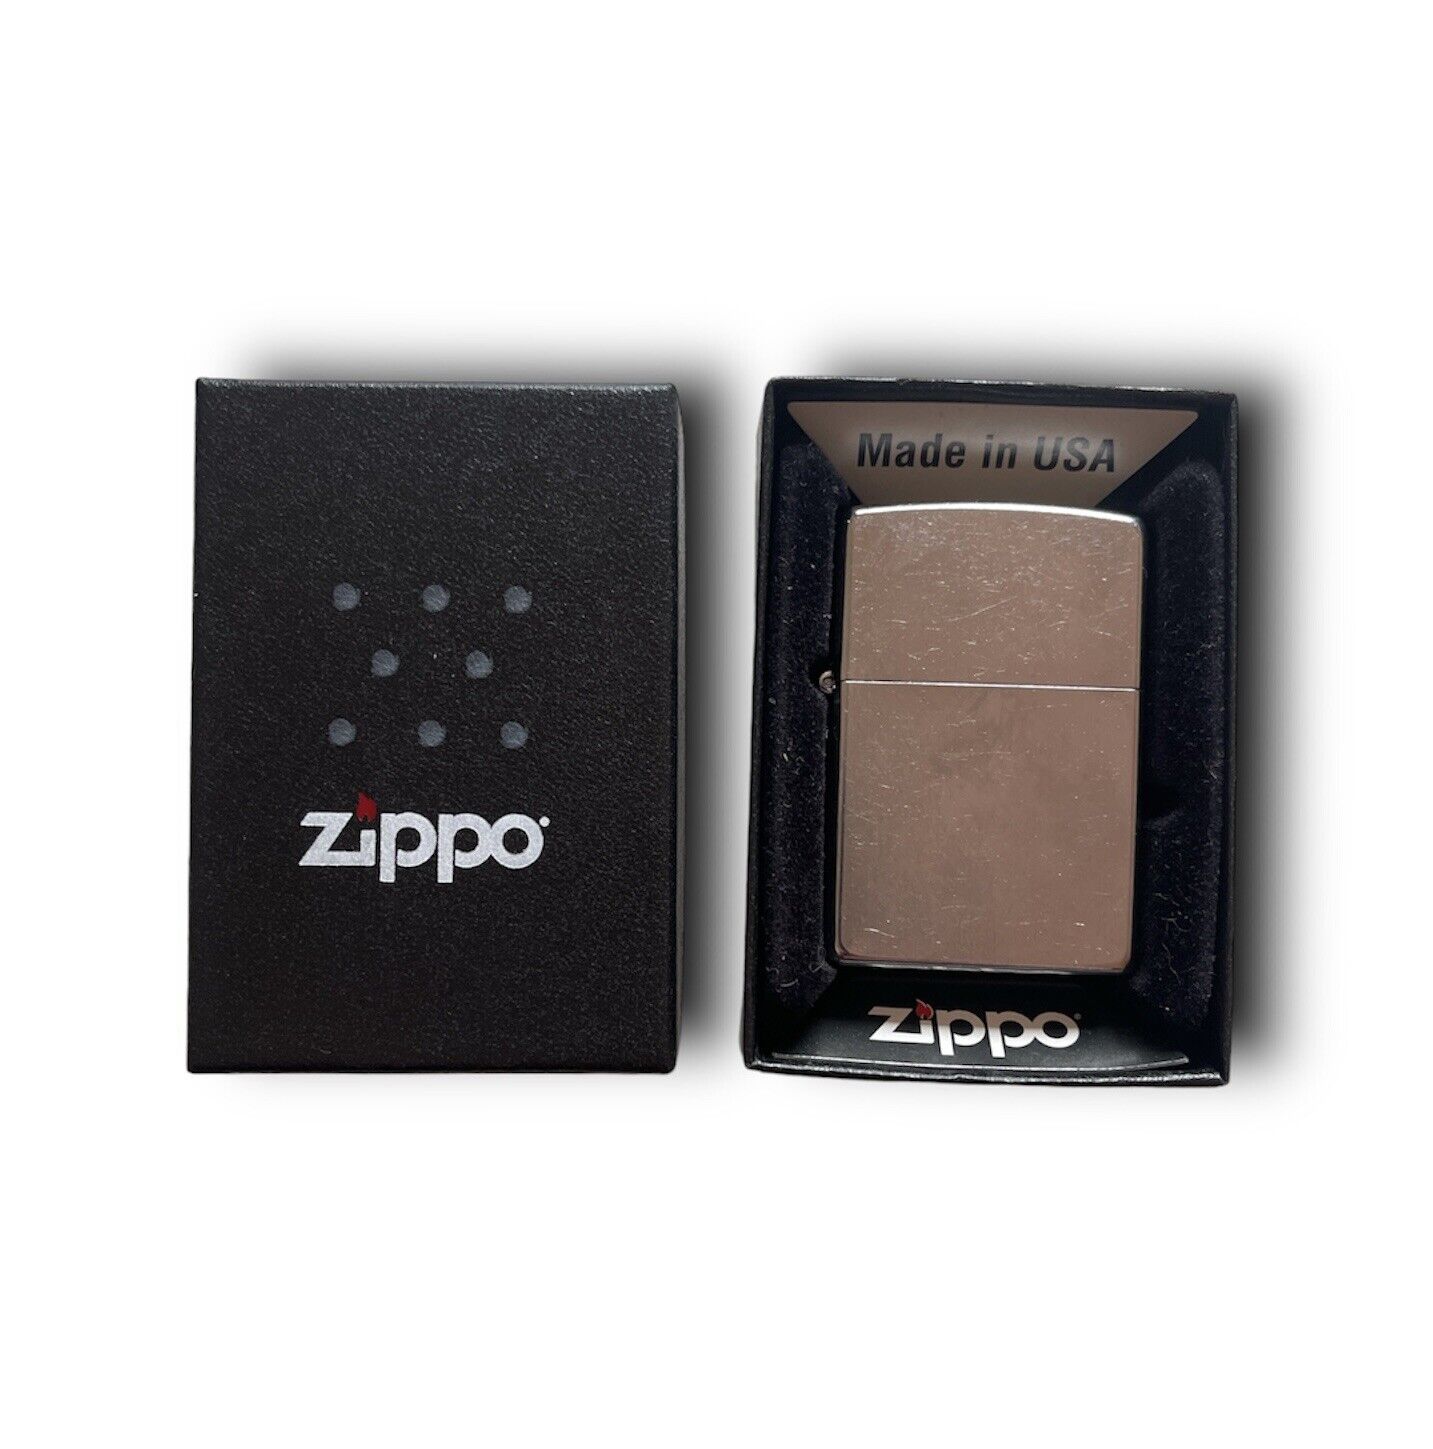 New G ZIPPO Cigarette Lighter 207 Regular Street Chrome NIB made in USA In Box